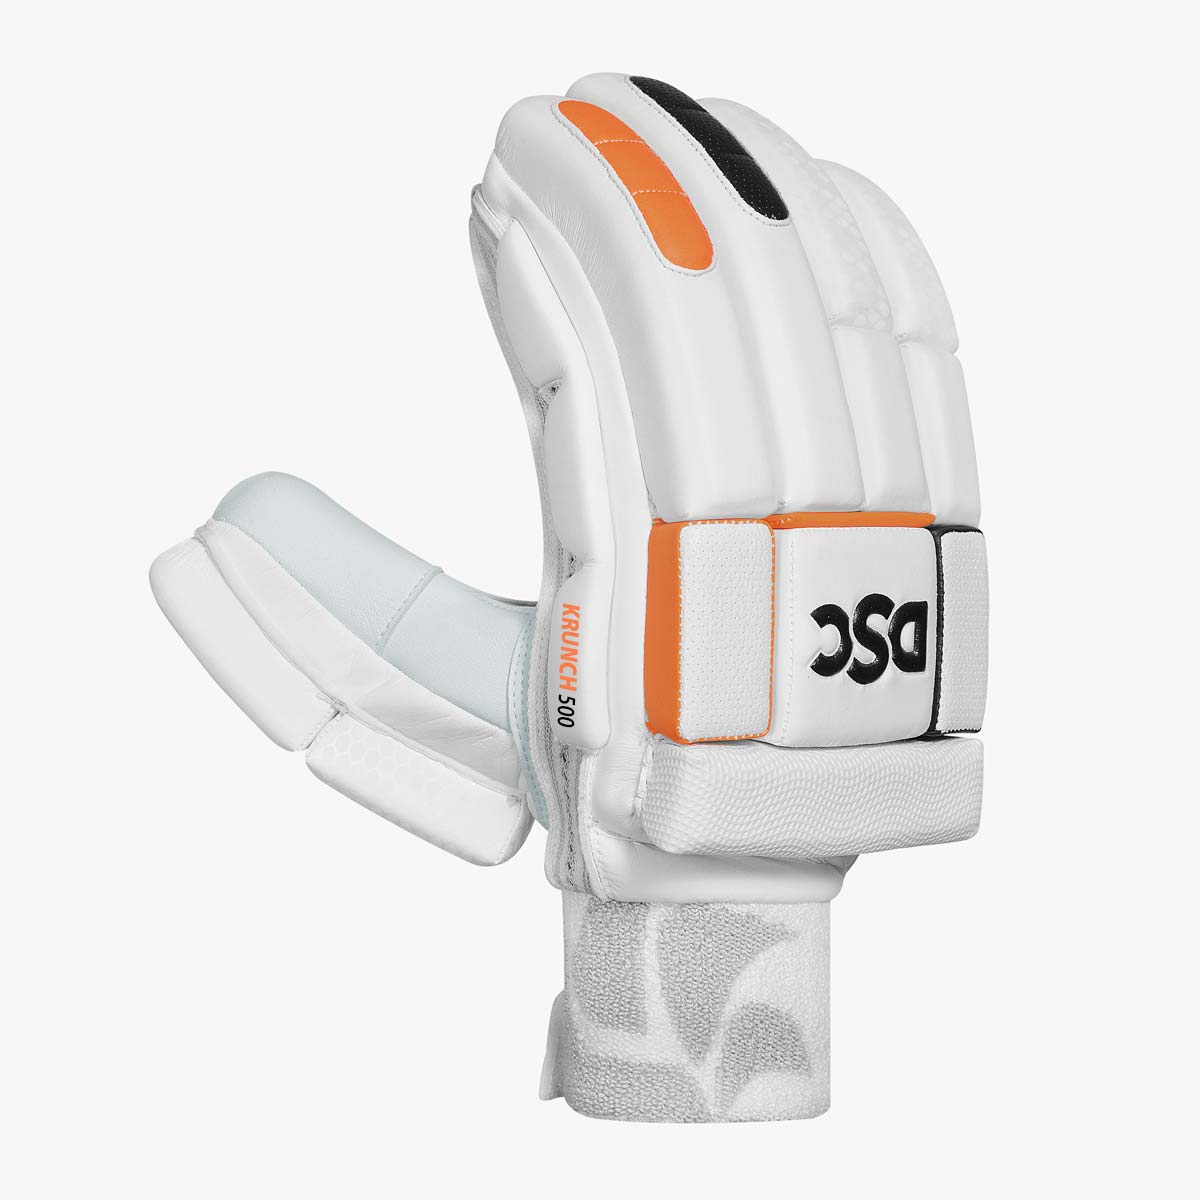 krunch-500-batting-gloves-2.jpg